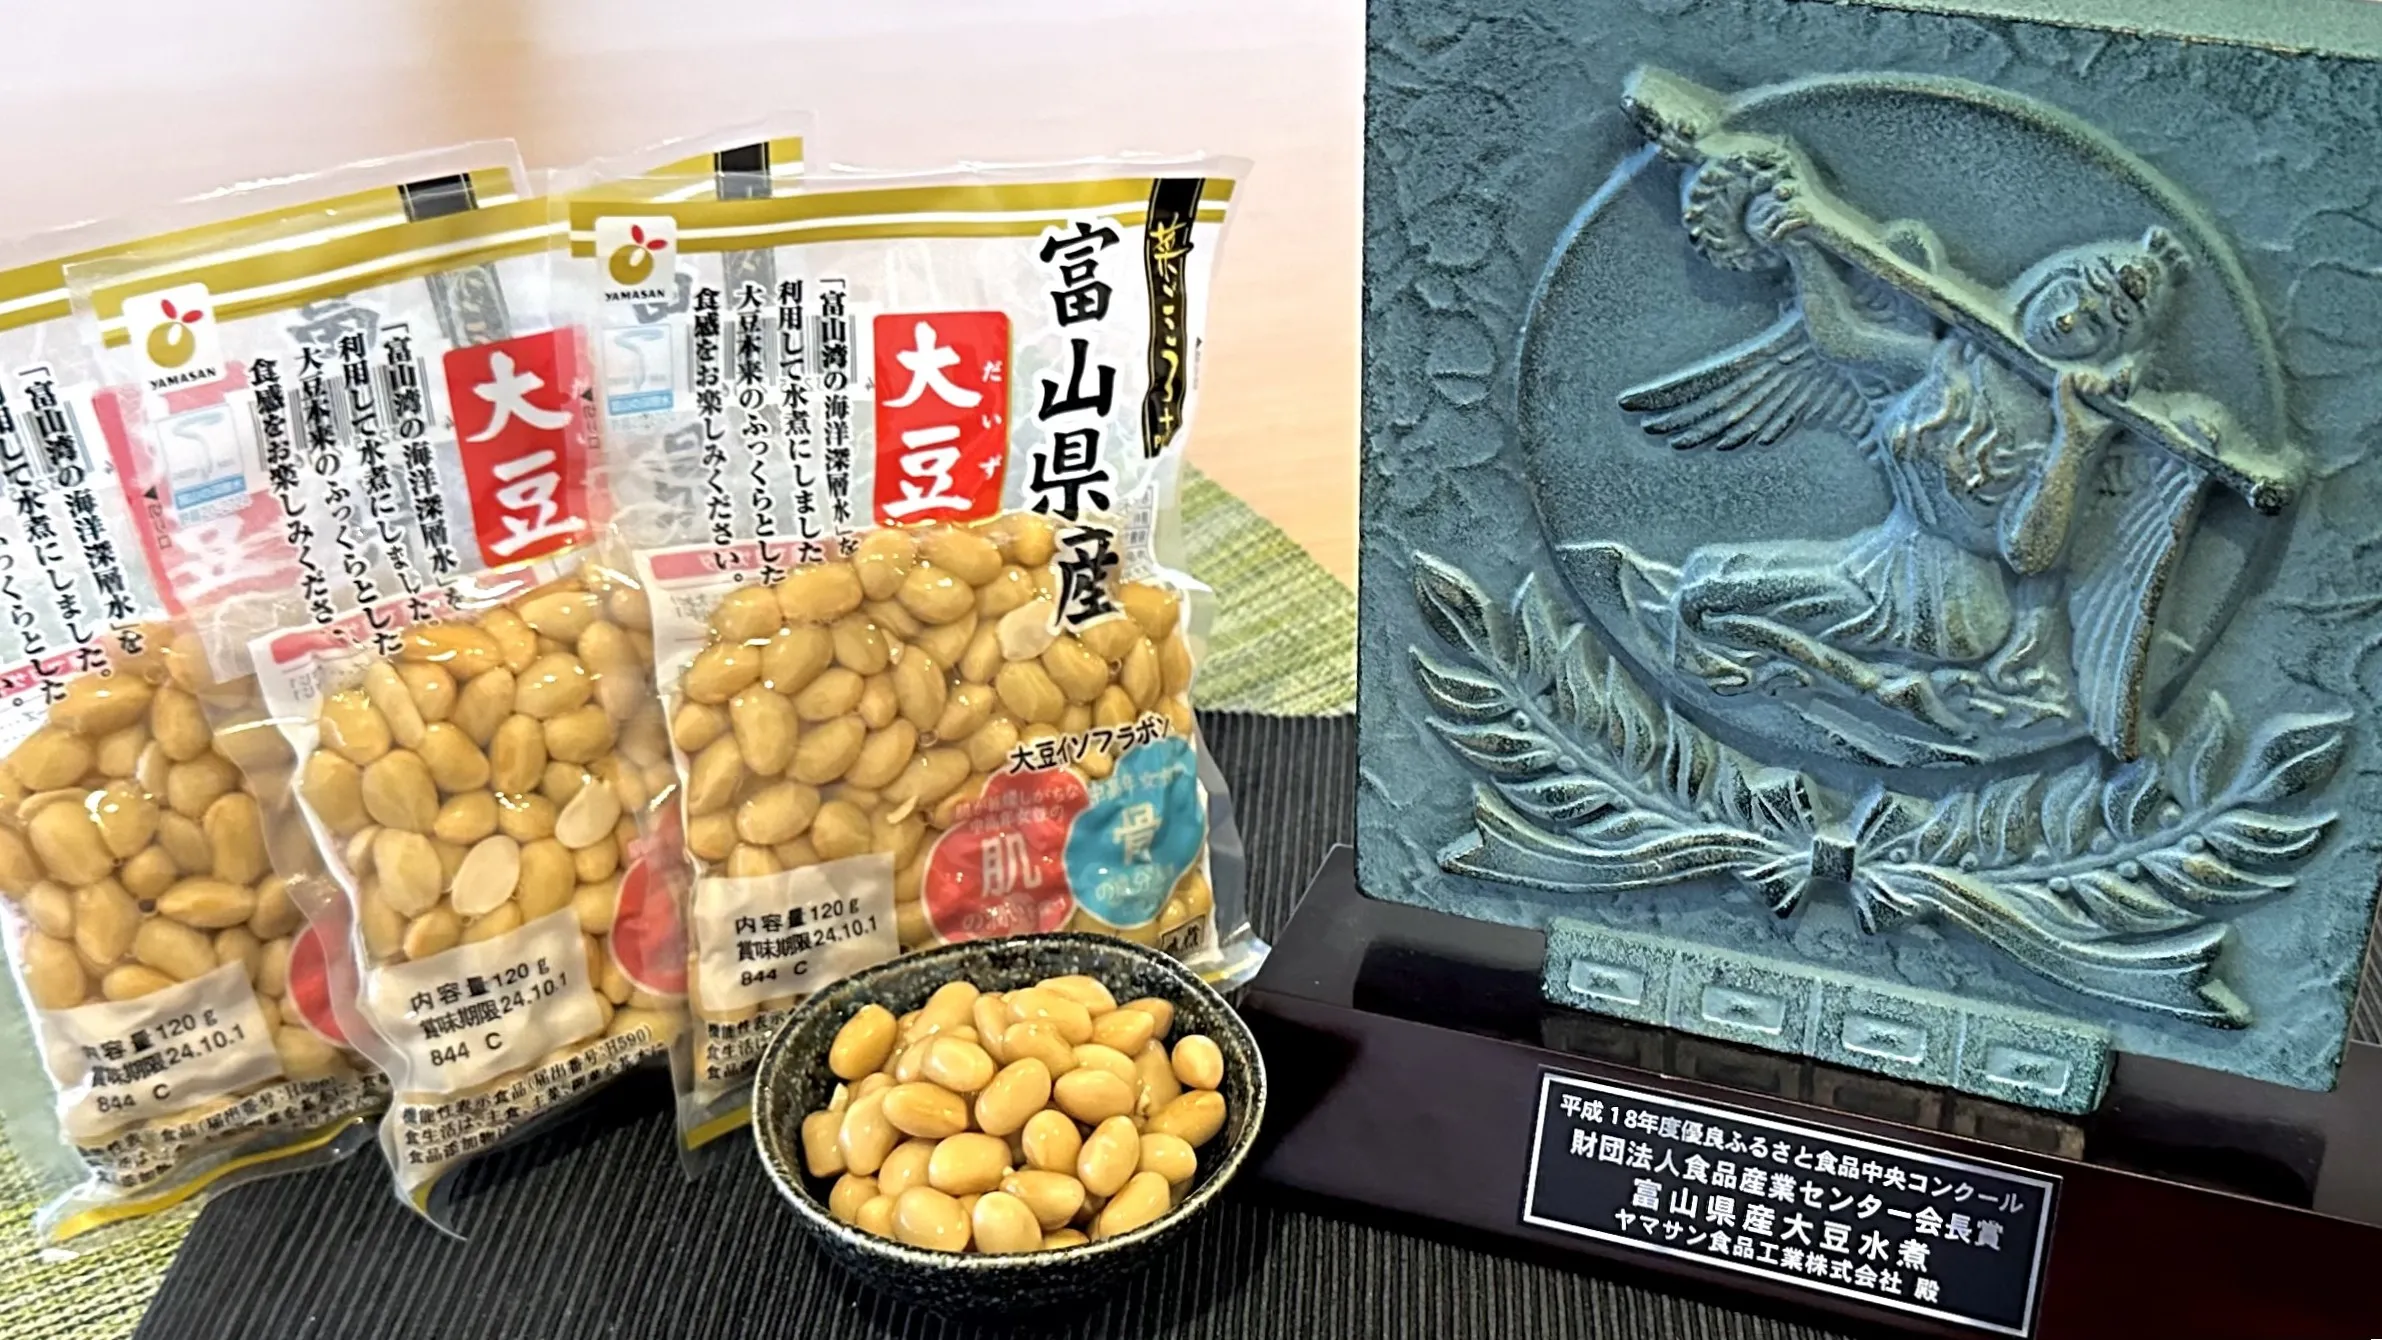 「富山県産大豆水煮」が、平成18年度「優良ふるさと食品中央コンクール」で財団法人食品産業センター会長賞を受賞しました。